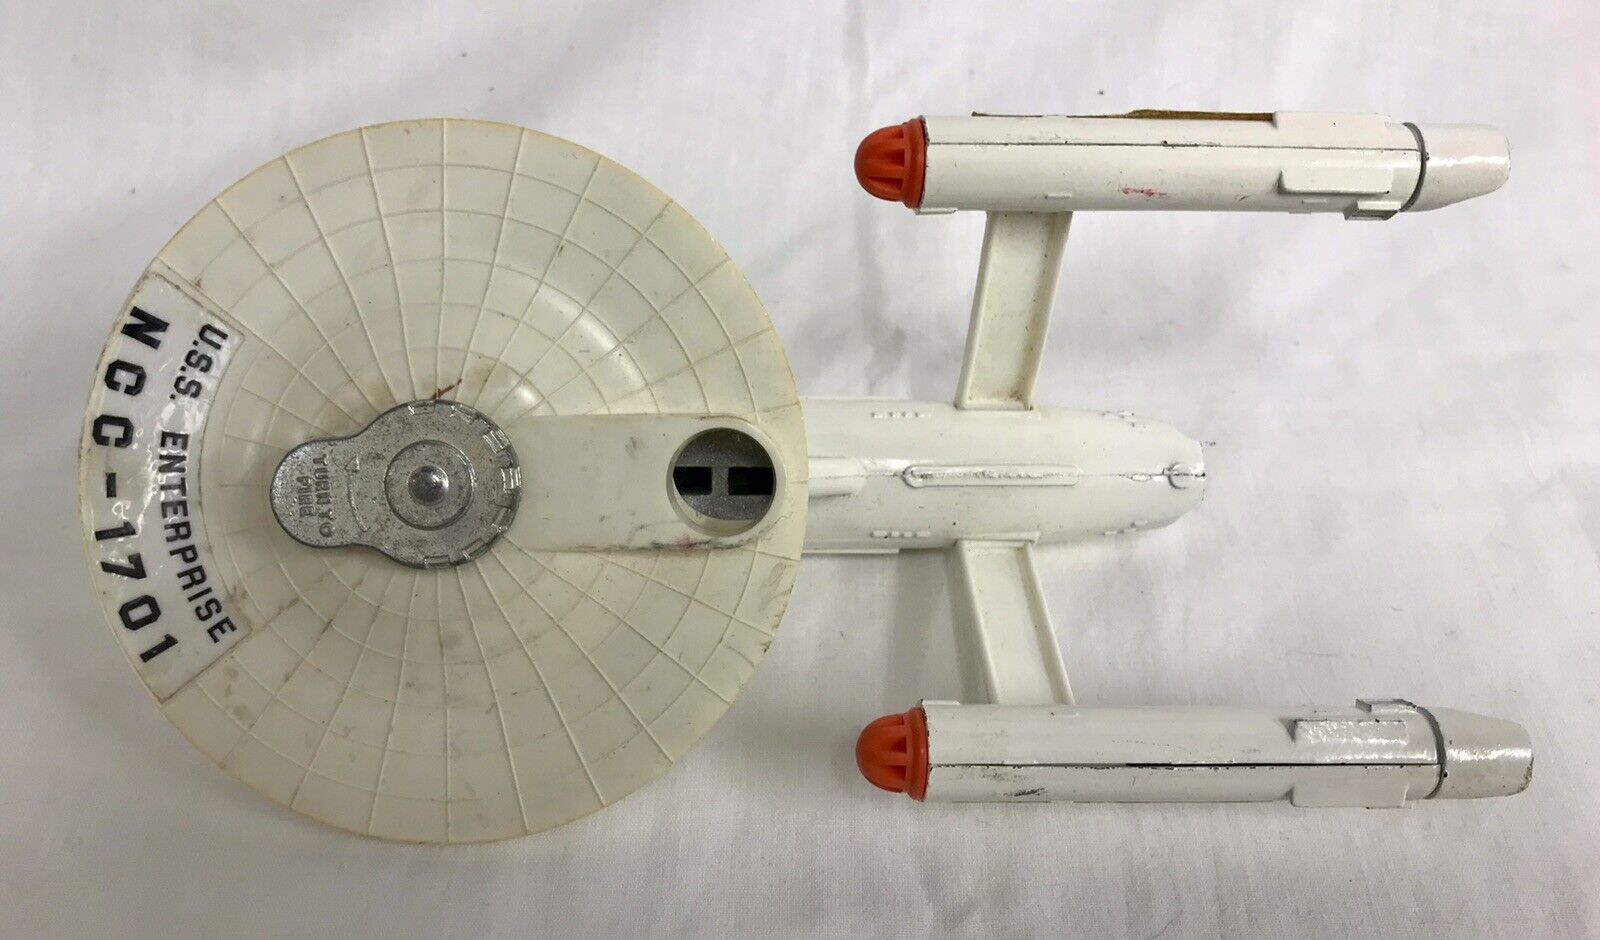 Vintage Dinky Toys U.S.S Enterprise NCC-1701 Star Trek Diecast 1976 Ship Model Standaard nieuwste product